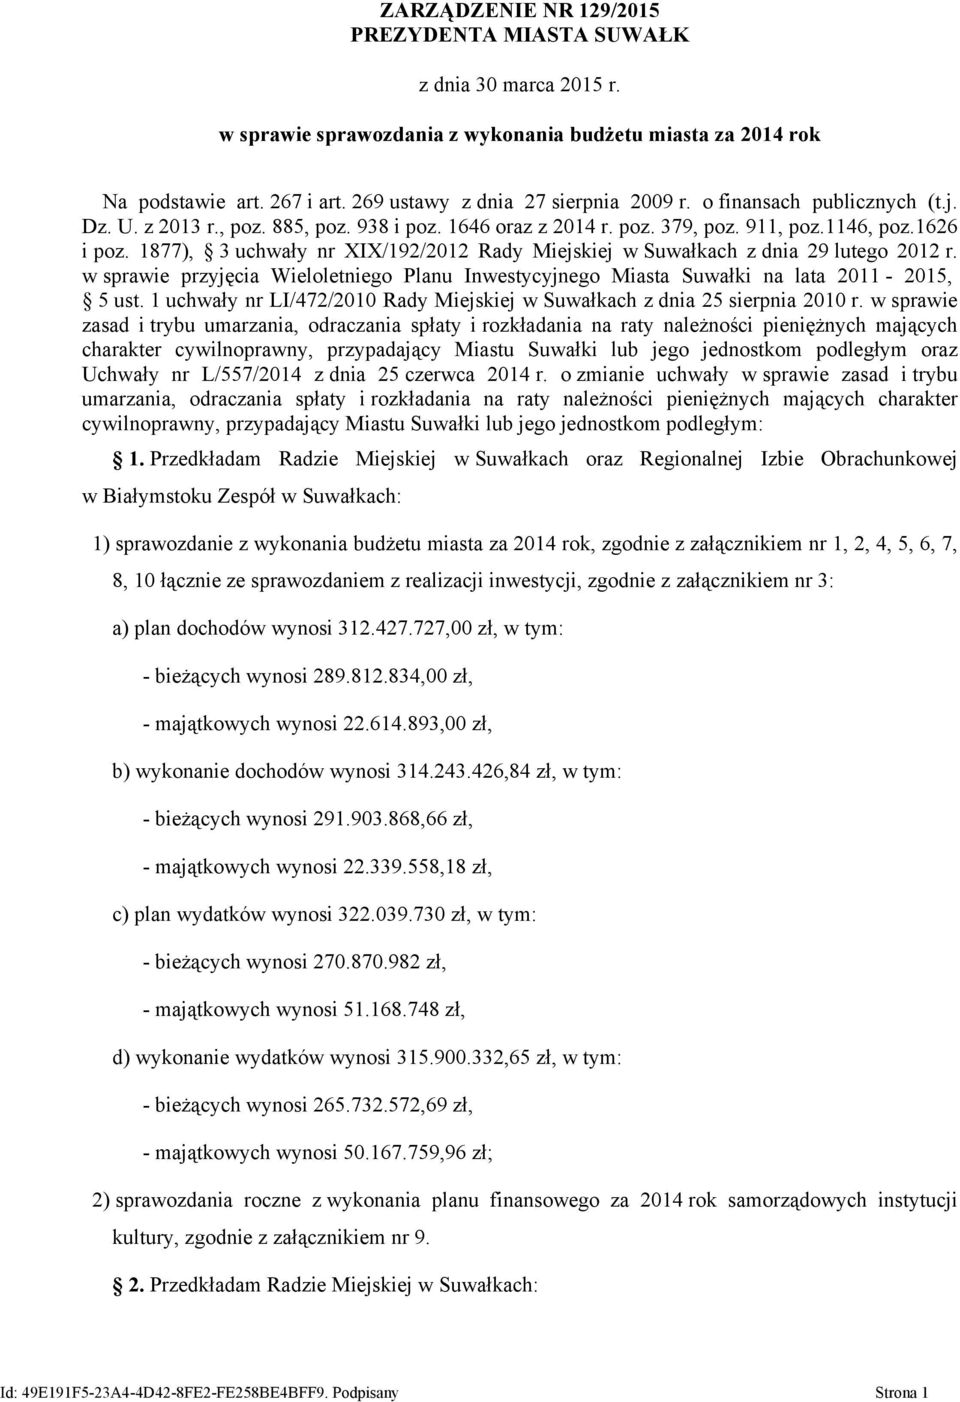 1877), 3 uchwały nr XIX/192/2012 Rady Miejskiej w Suwałkach z dnia 29 lutego 2012 r. w sprawie przyjęcia Wieloletniego Planu Inwestycyjnego Miasta Suwałki na lata 2011-2015, 5 ust.